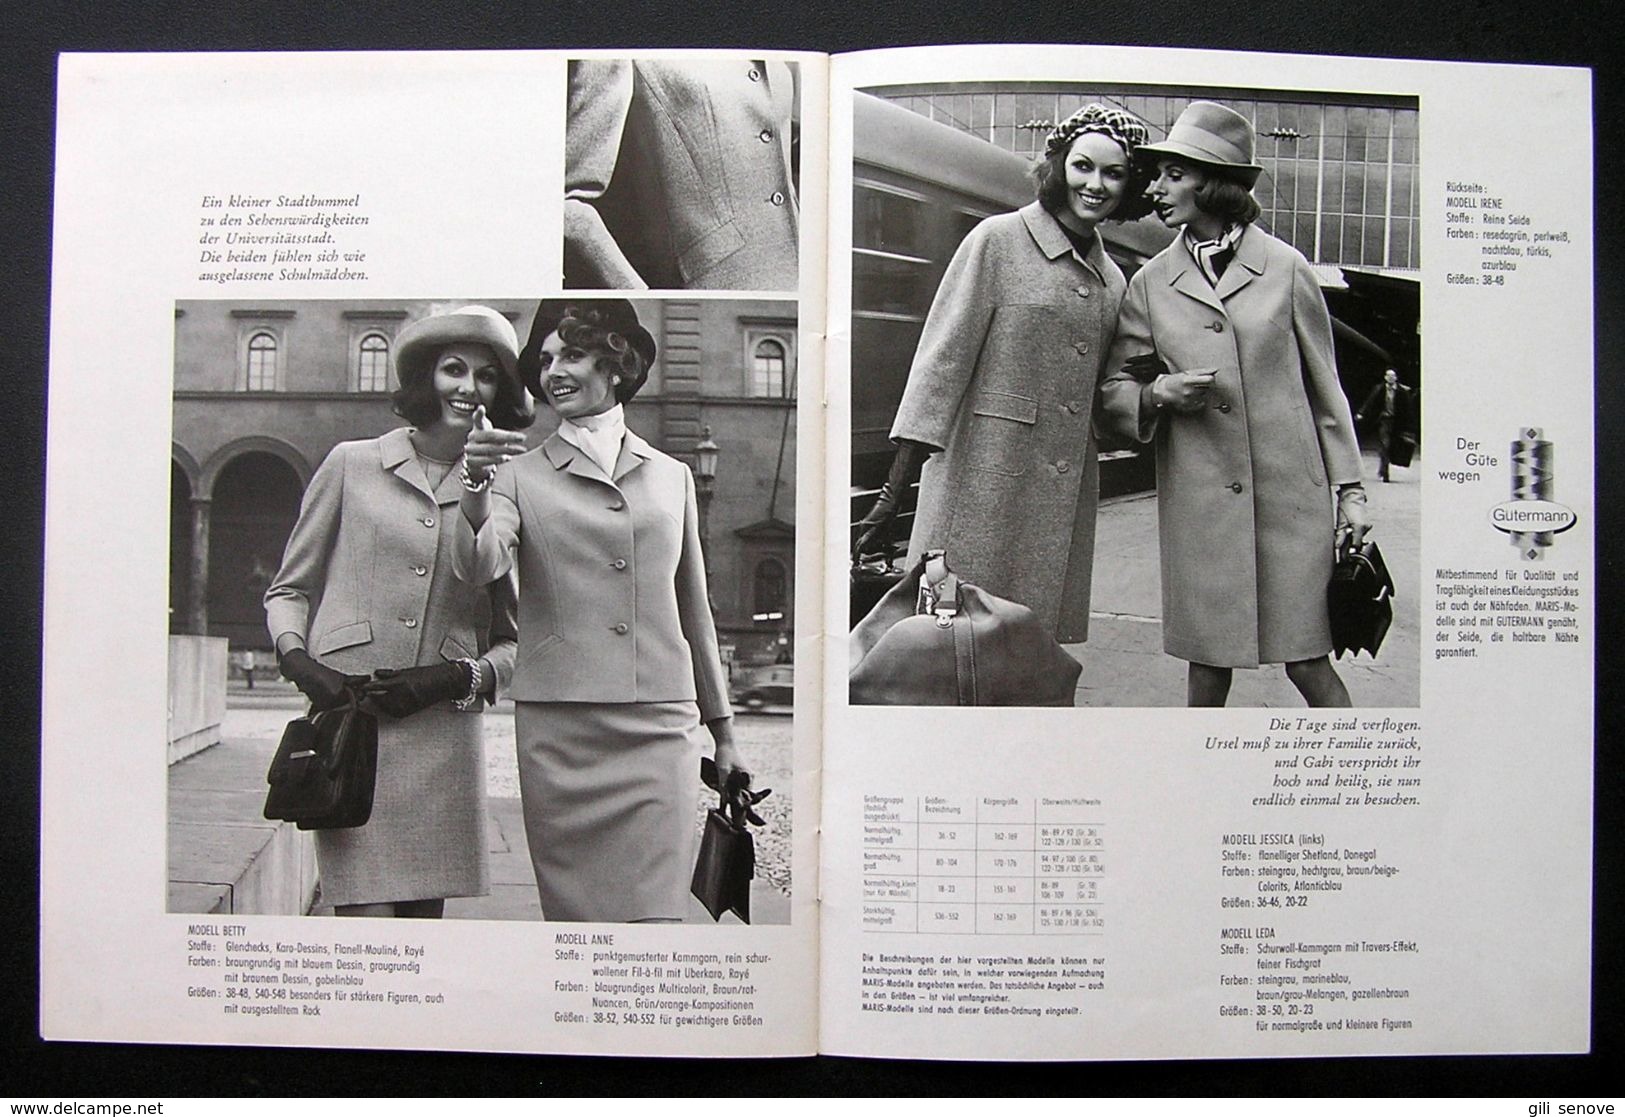 Original Maris Journal 1969 Vintage Fashion Advertising Booklet - Catálogos